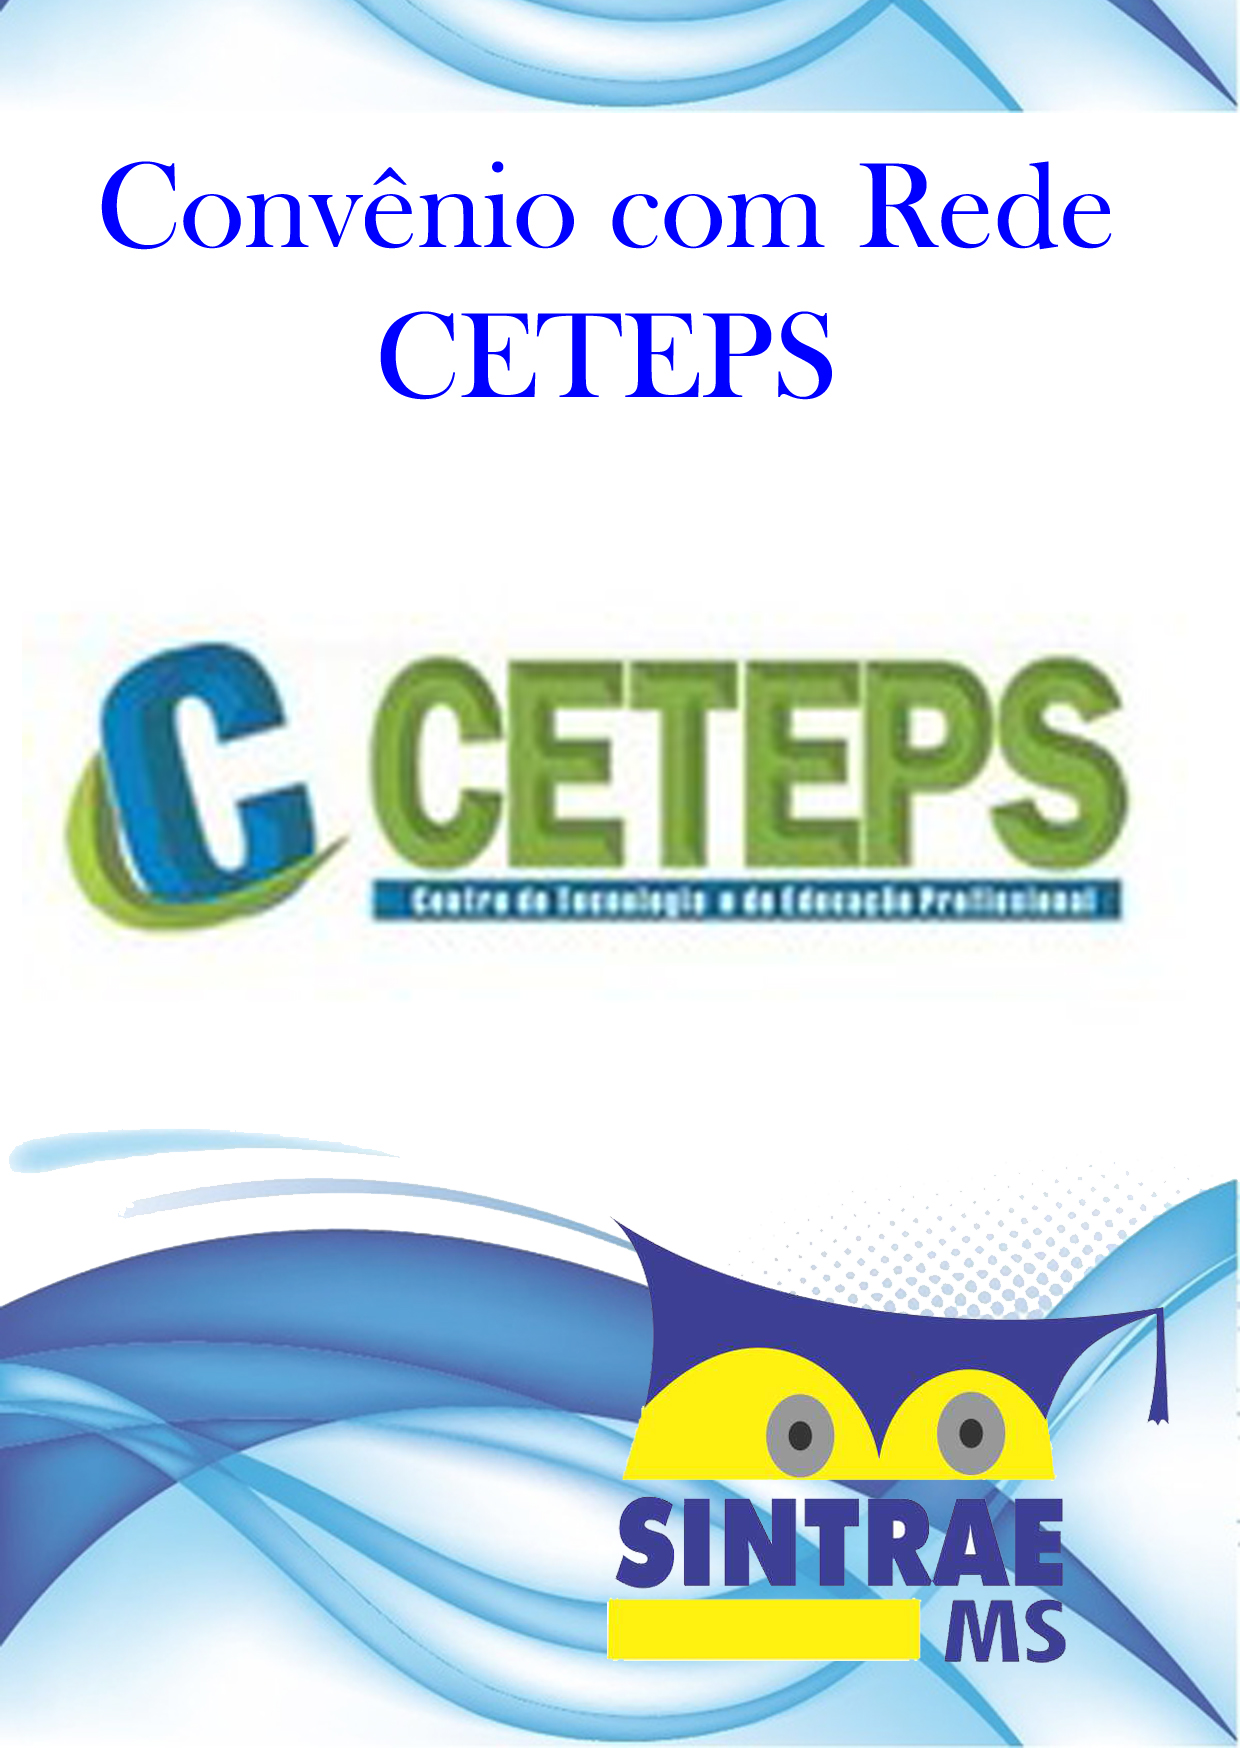 CETEPS